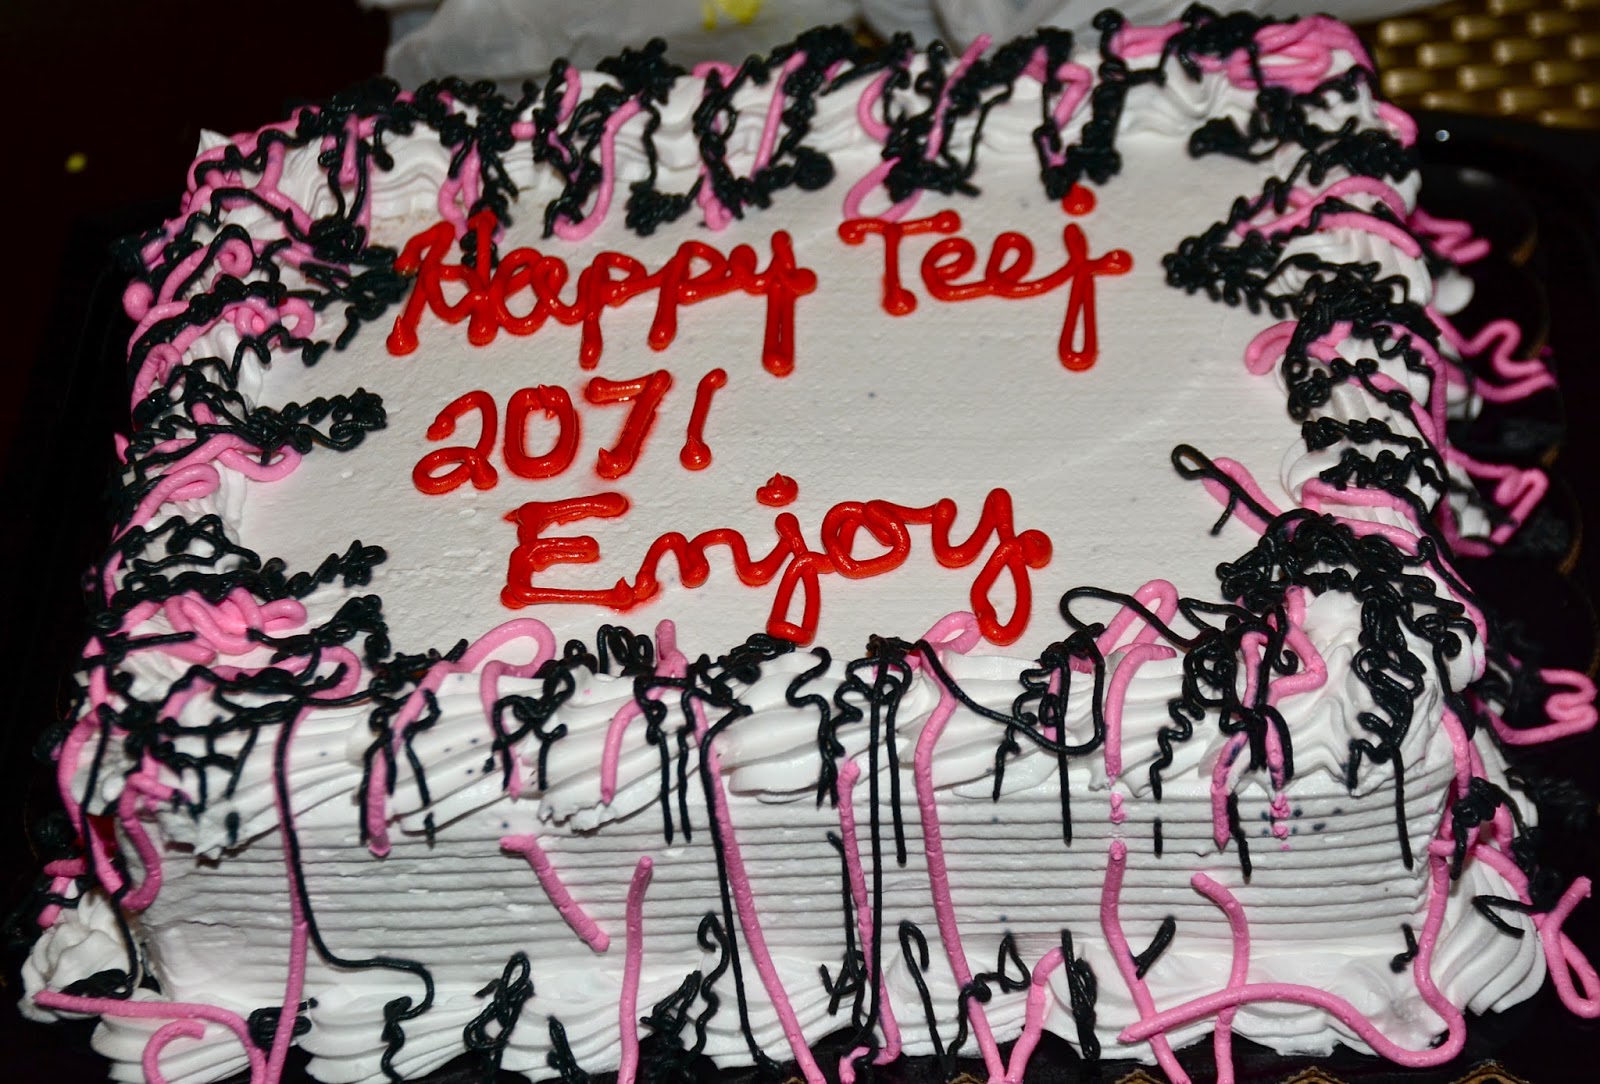 Nepali Tummy Teej Celebration 2014